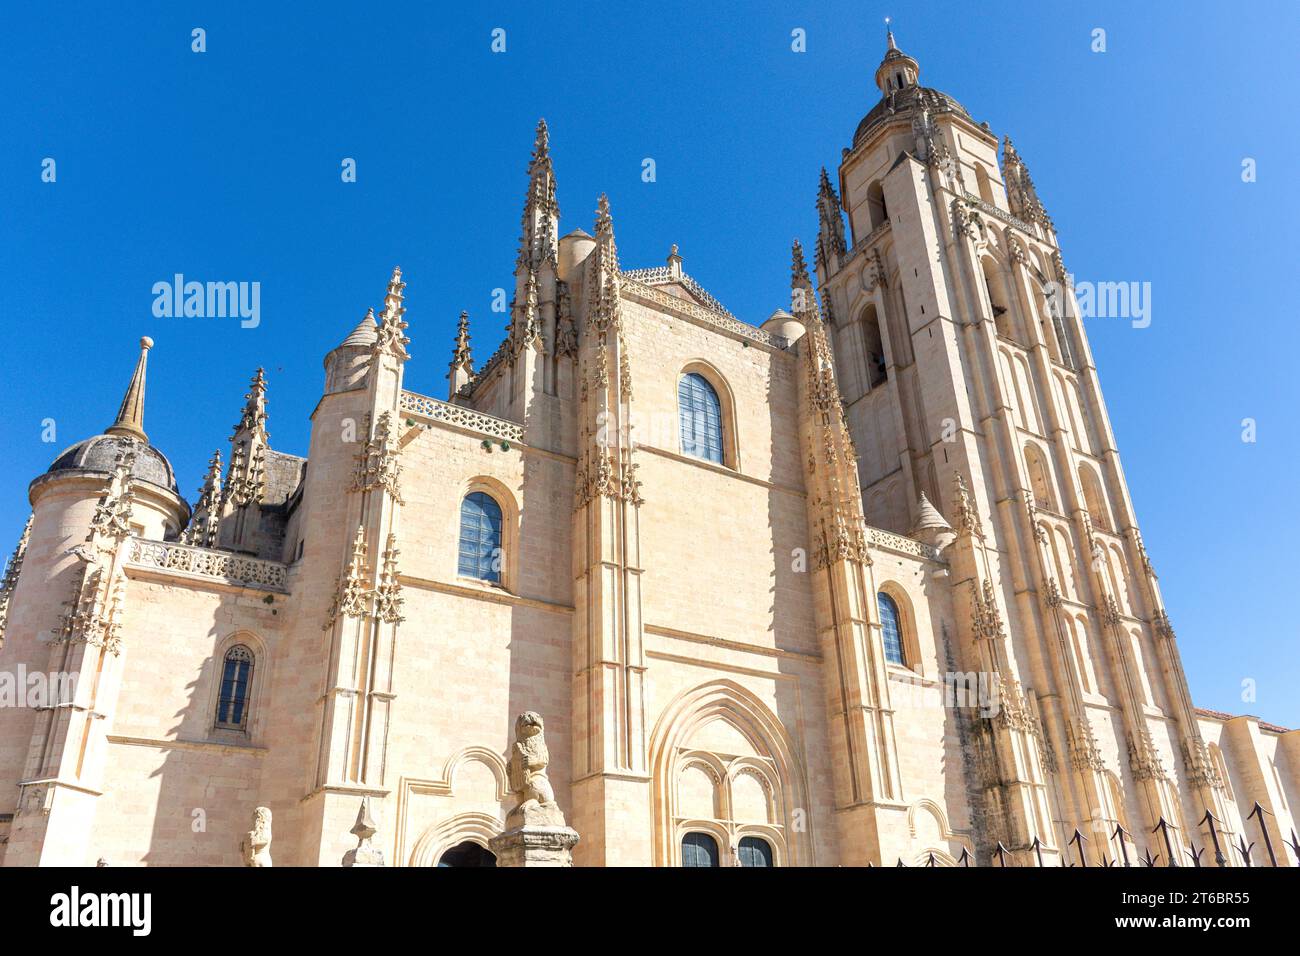 Segovia Cathedral (Catedral de Segovia), Calle de San Frutos, Segovia, Castile and León, Kingdom of Spain Stock Photo